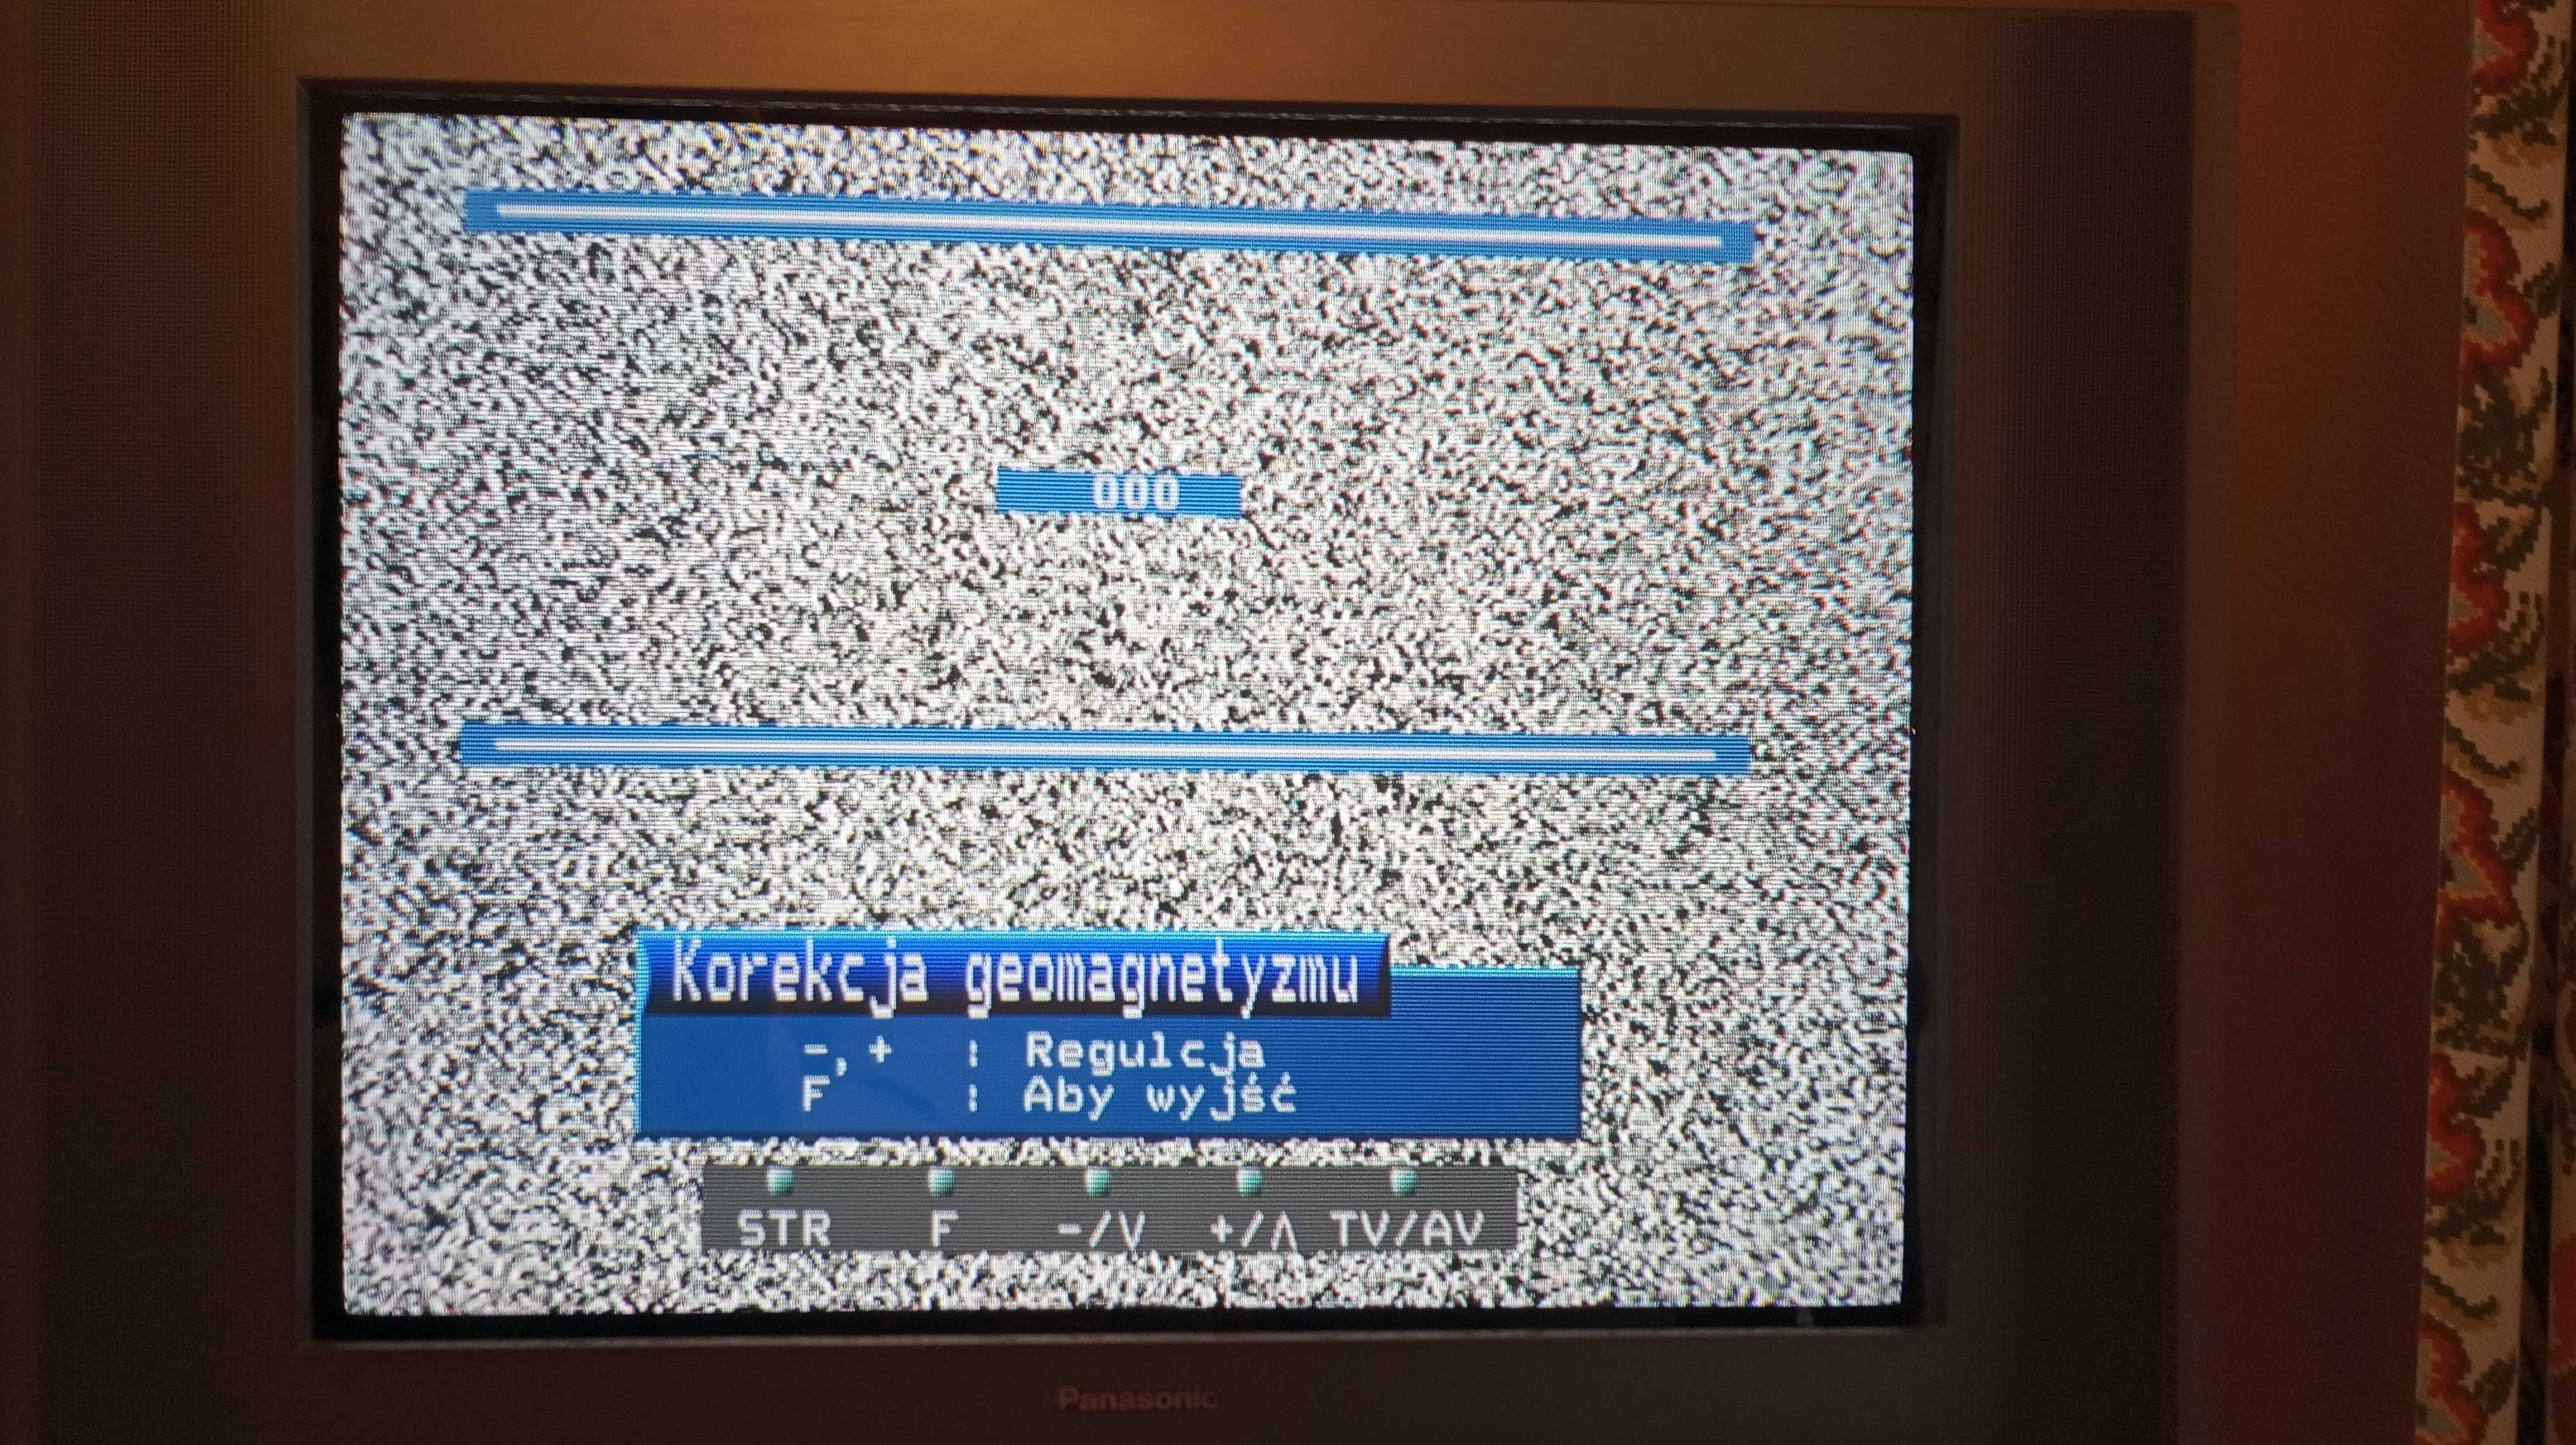 Telewizor TV Panasonic TX-29PX10P kineskopowy 100 Hz sprawny + pilot